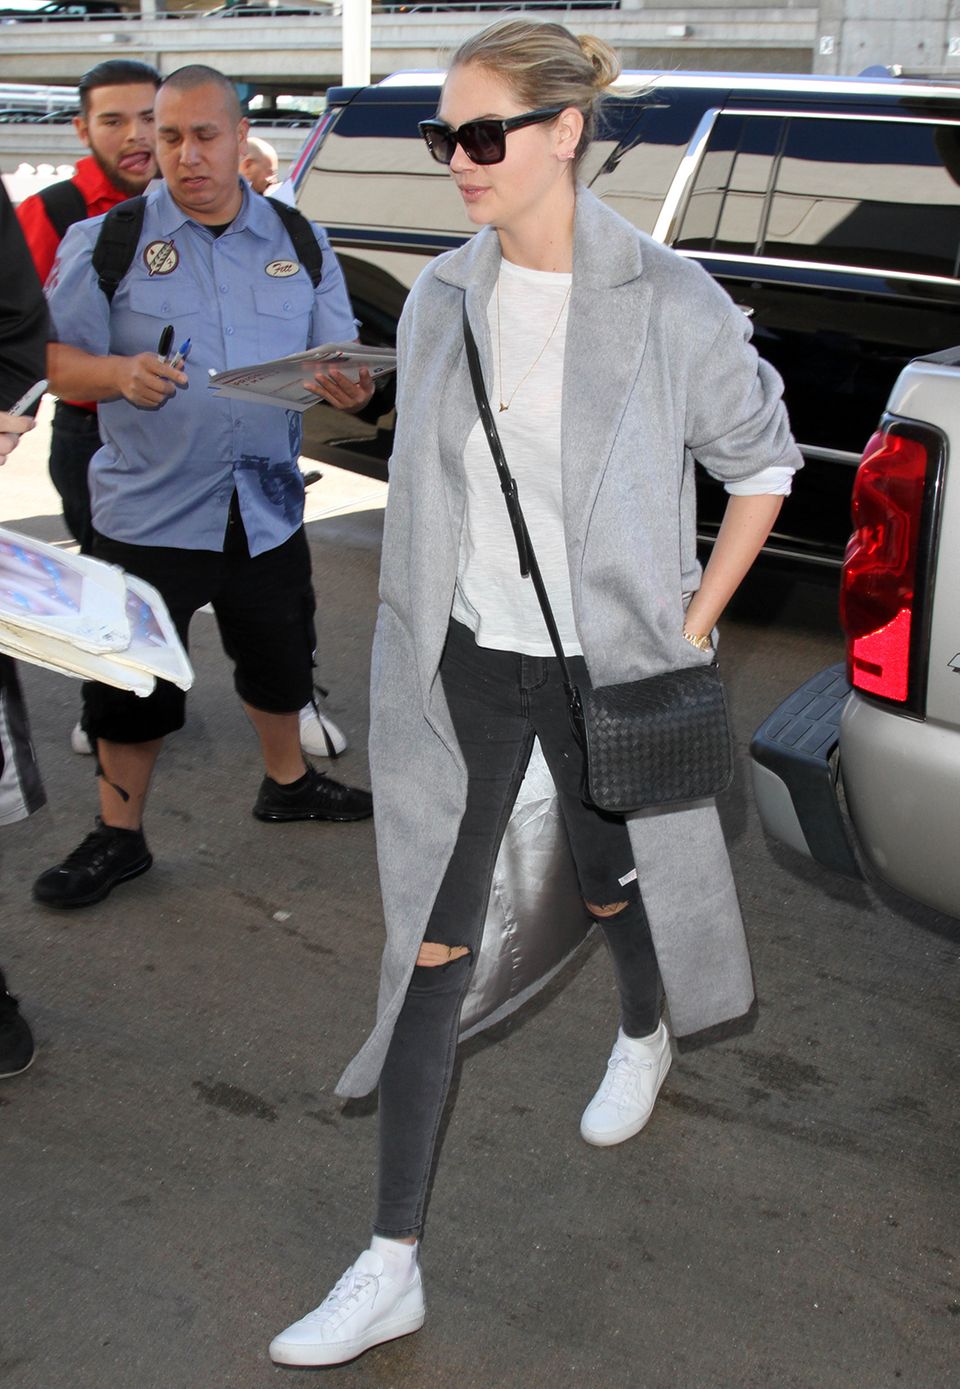 Supermodel Kate Upton hat den lässigen Reise-Style perfektioniert und trägt zu Skinny-Jeans, Shirt und Sneakern einen grauen, überlangen Mantel.